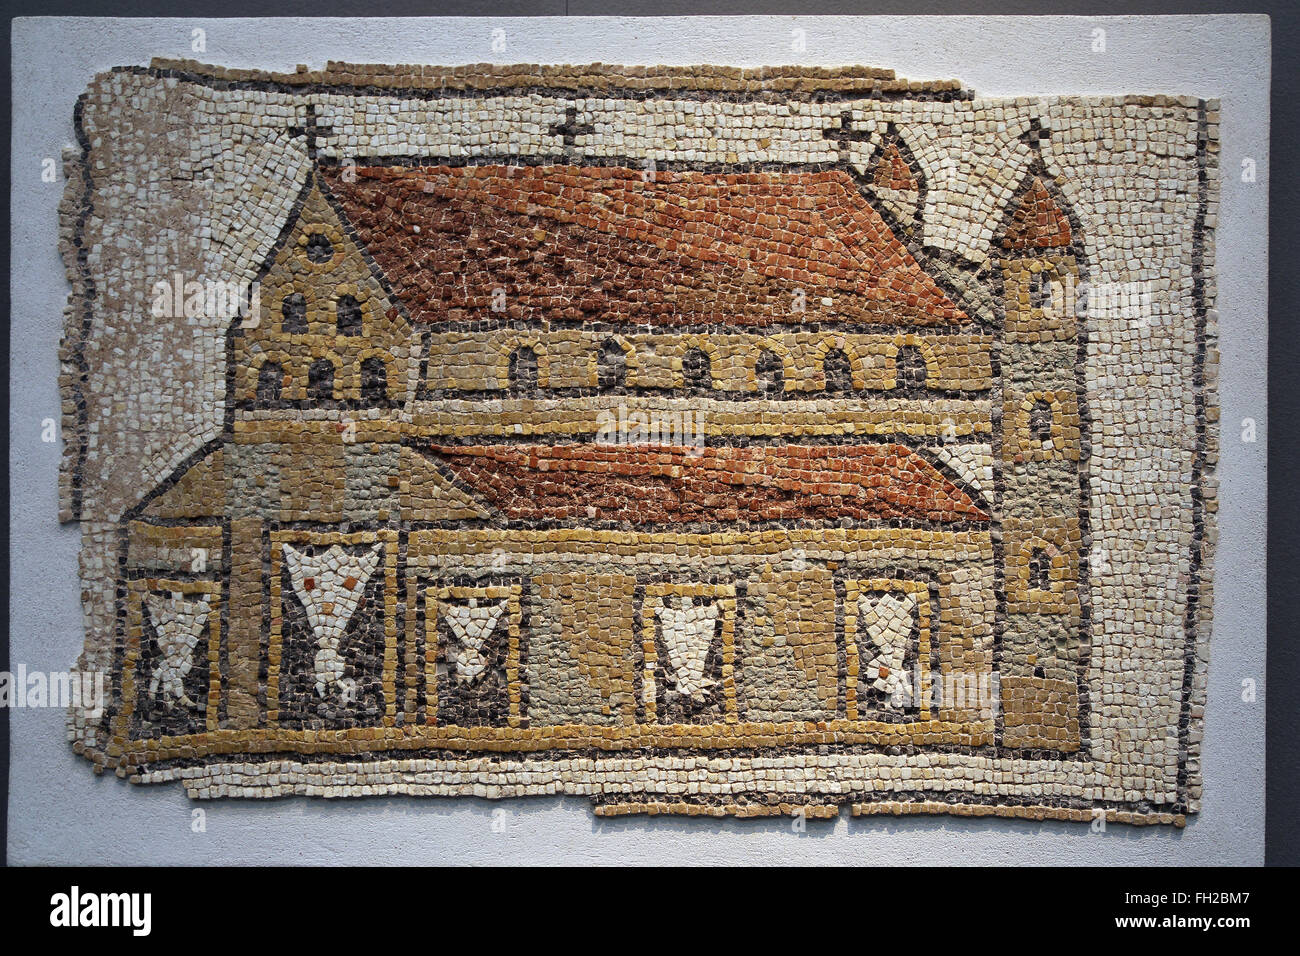 Römisches Mosaik einer Kirche mit Türmen, östlichen Mittelmeer, 5. Jahrhundert n. Chr.. Die Kirche hat drei Schiffen. Frühchristliche Roman. Stockfoto